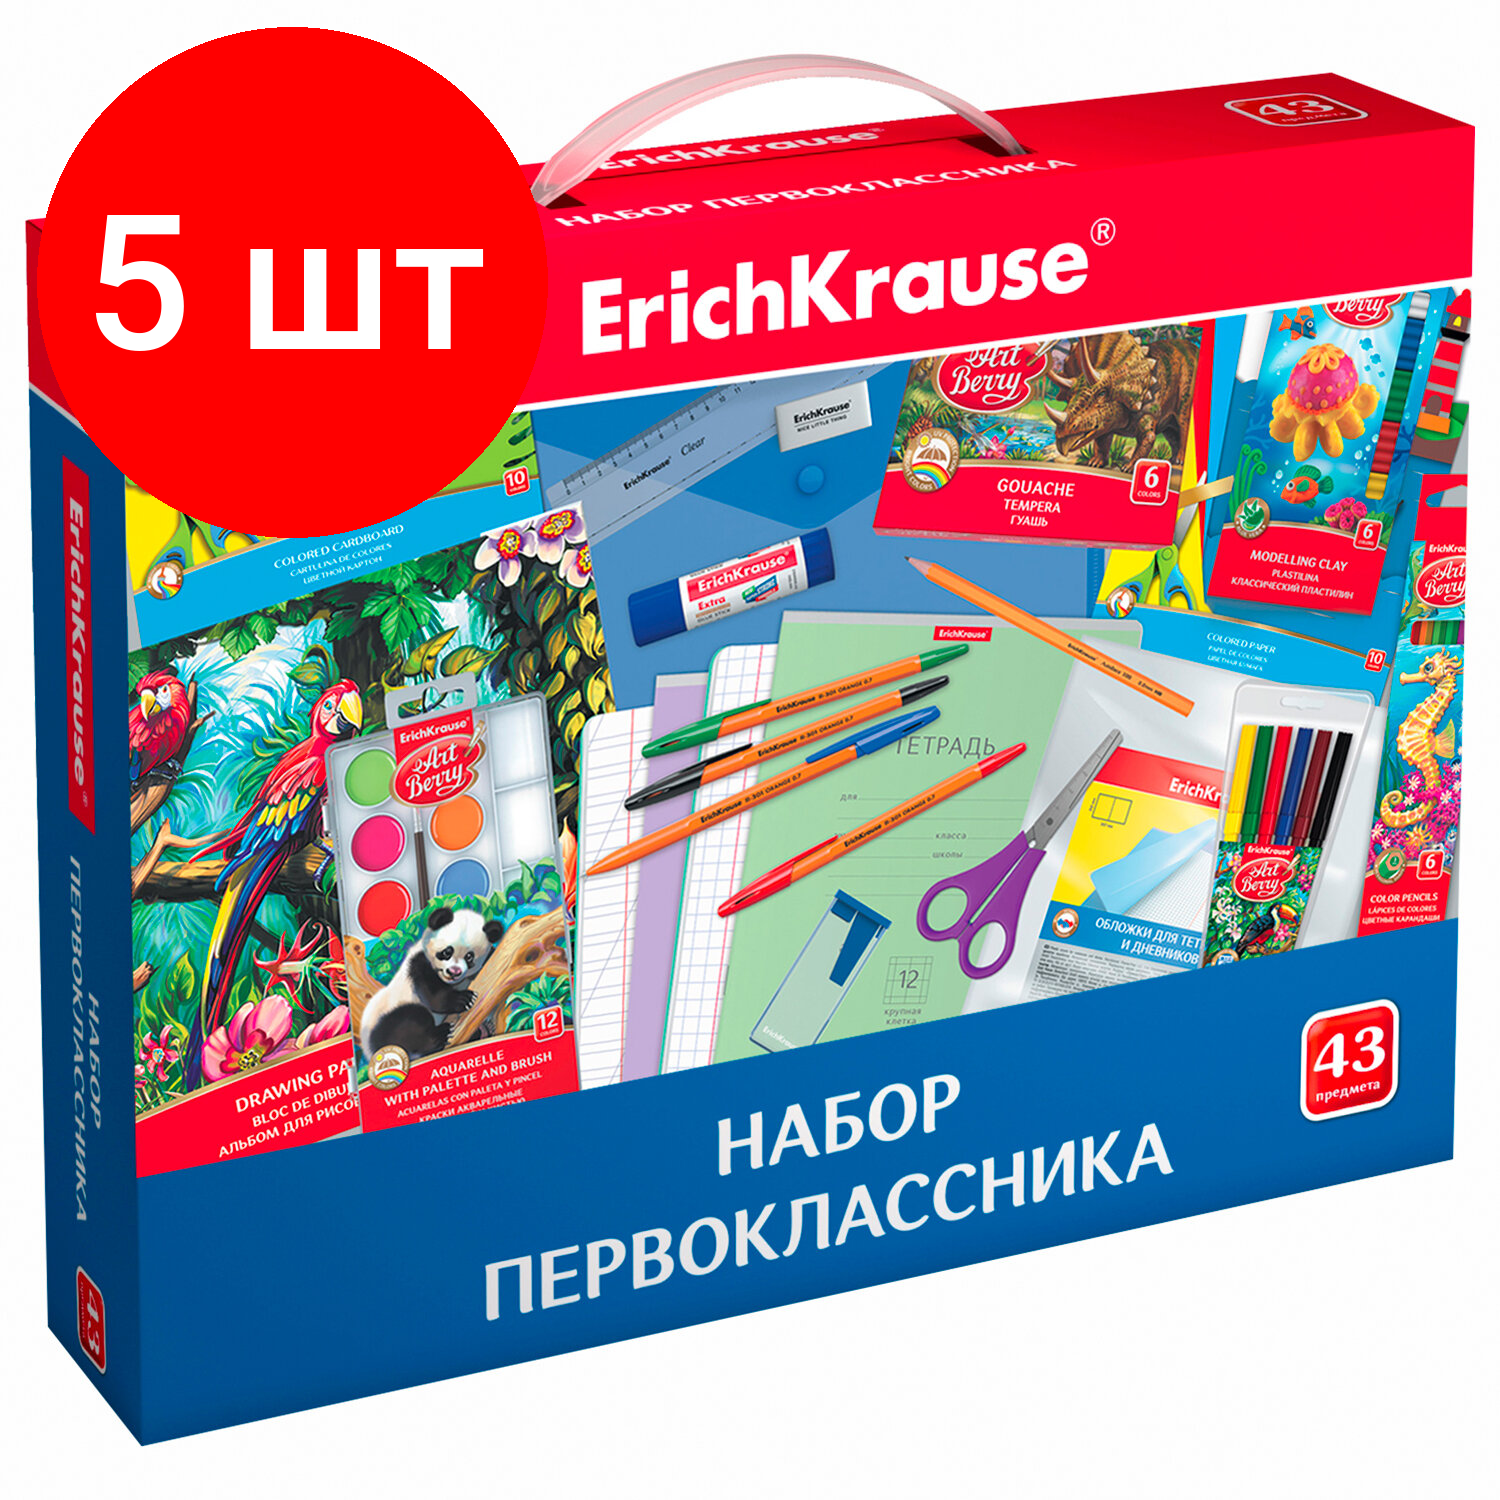 Комплект 5 шт, Набор школьных принадлежностей в подарочной коробке ERICH KRAUSE, 43 предмета, 45413